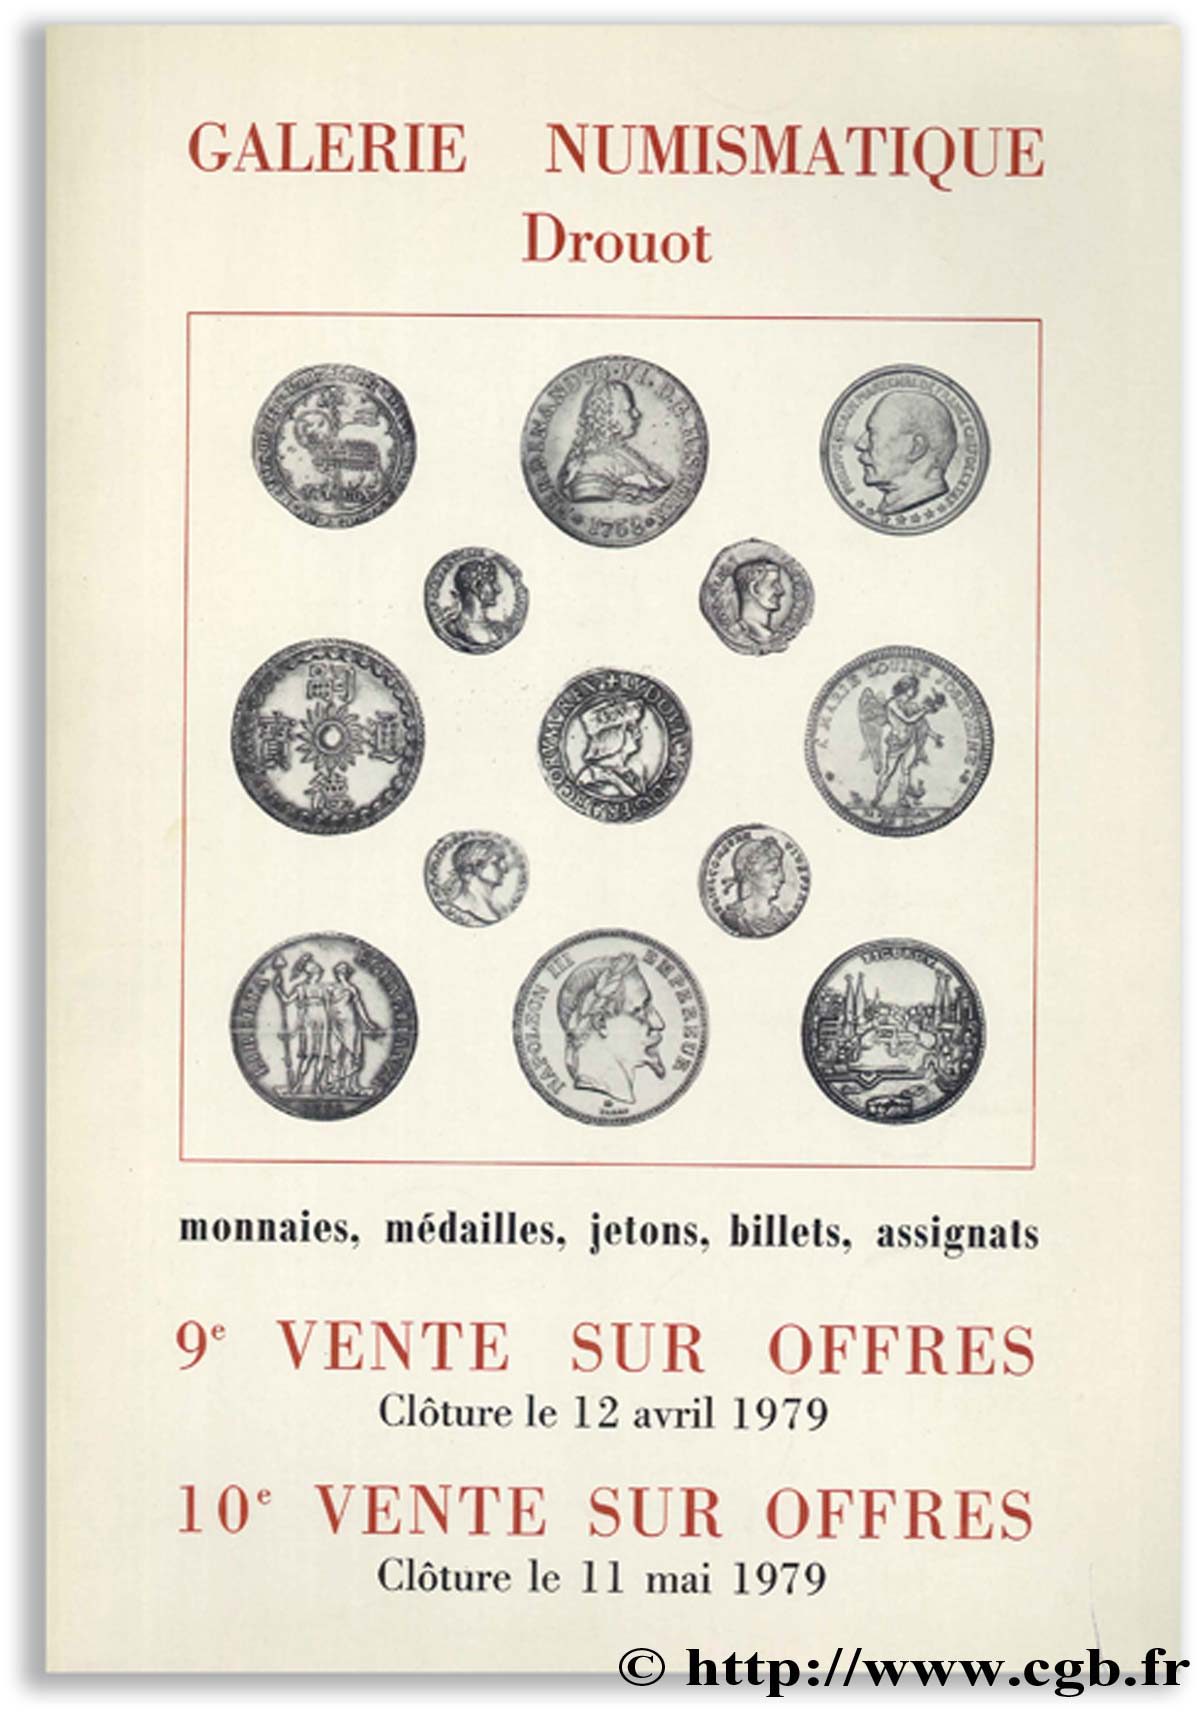 Galerie Numismatique Drouot - monnaies, médailles, jetons, billets, assignats 1979 Collectif